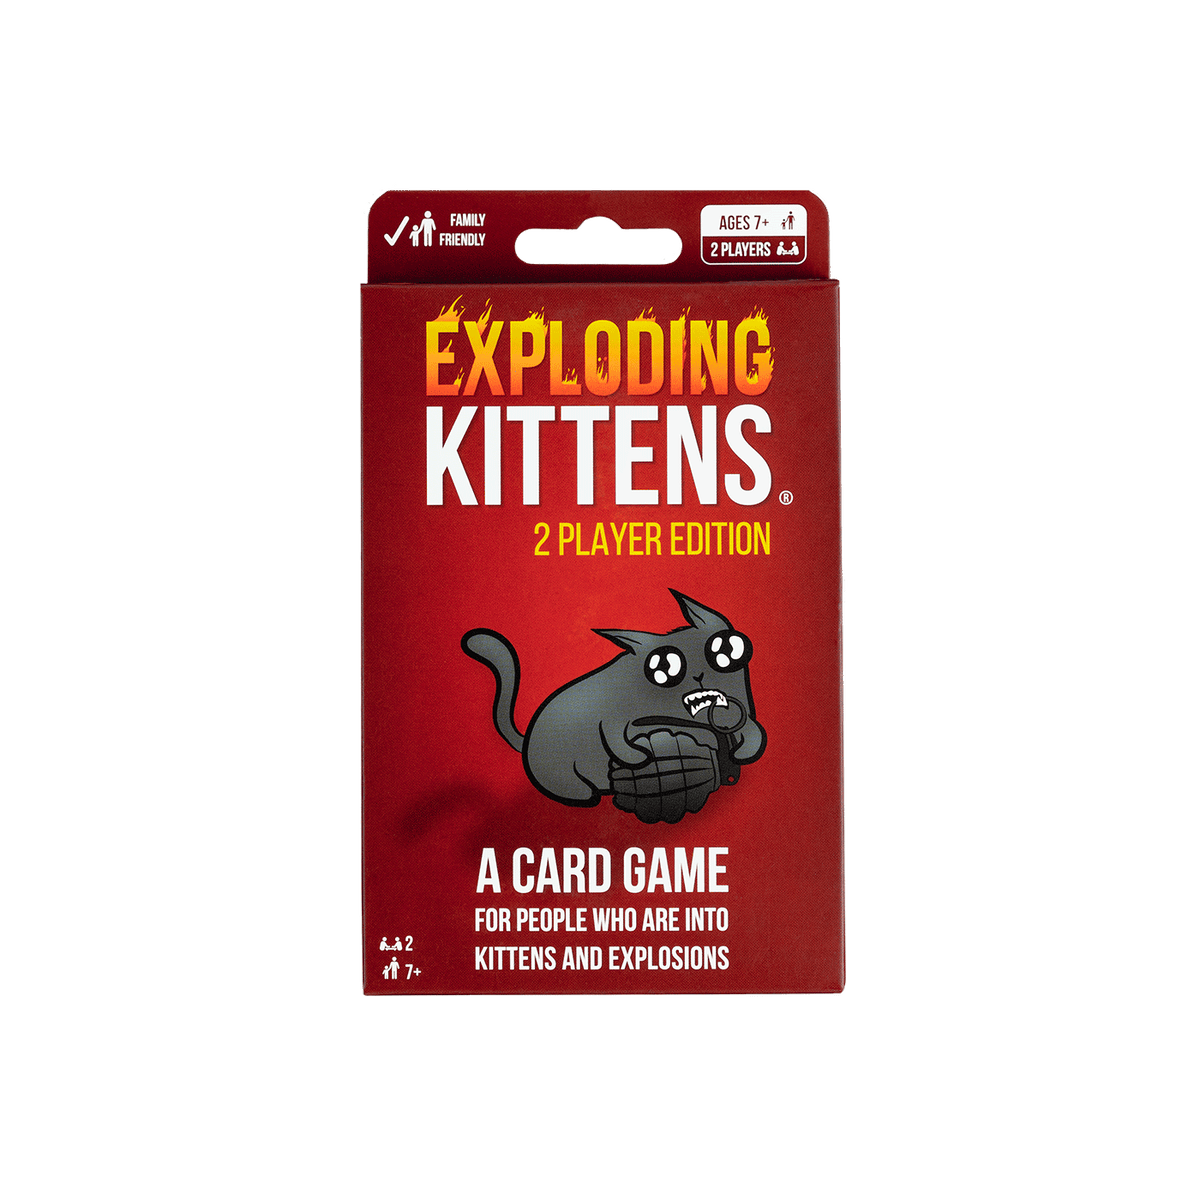 Exploding kitten card : r/ExplodingKittens